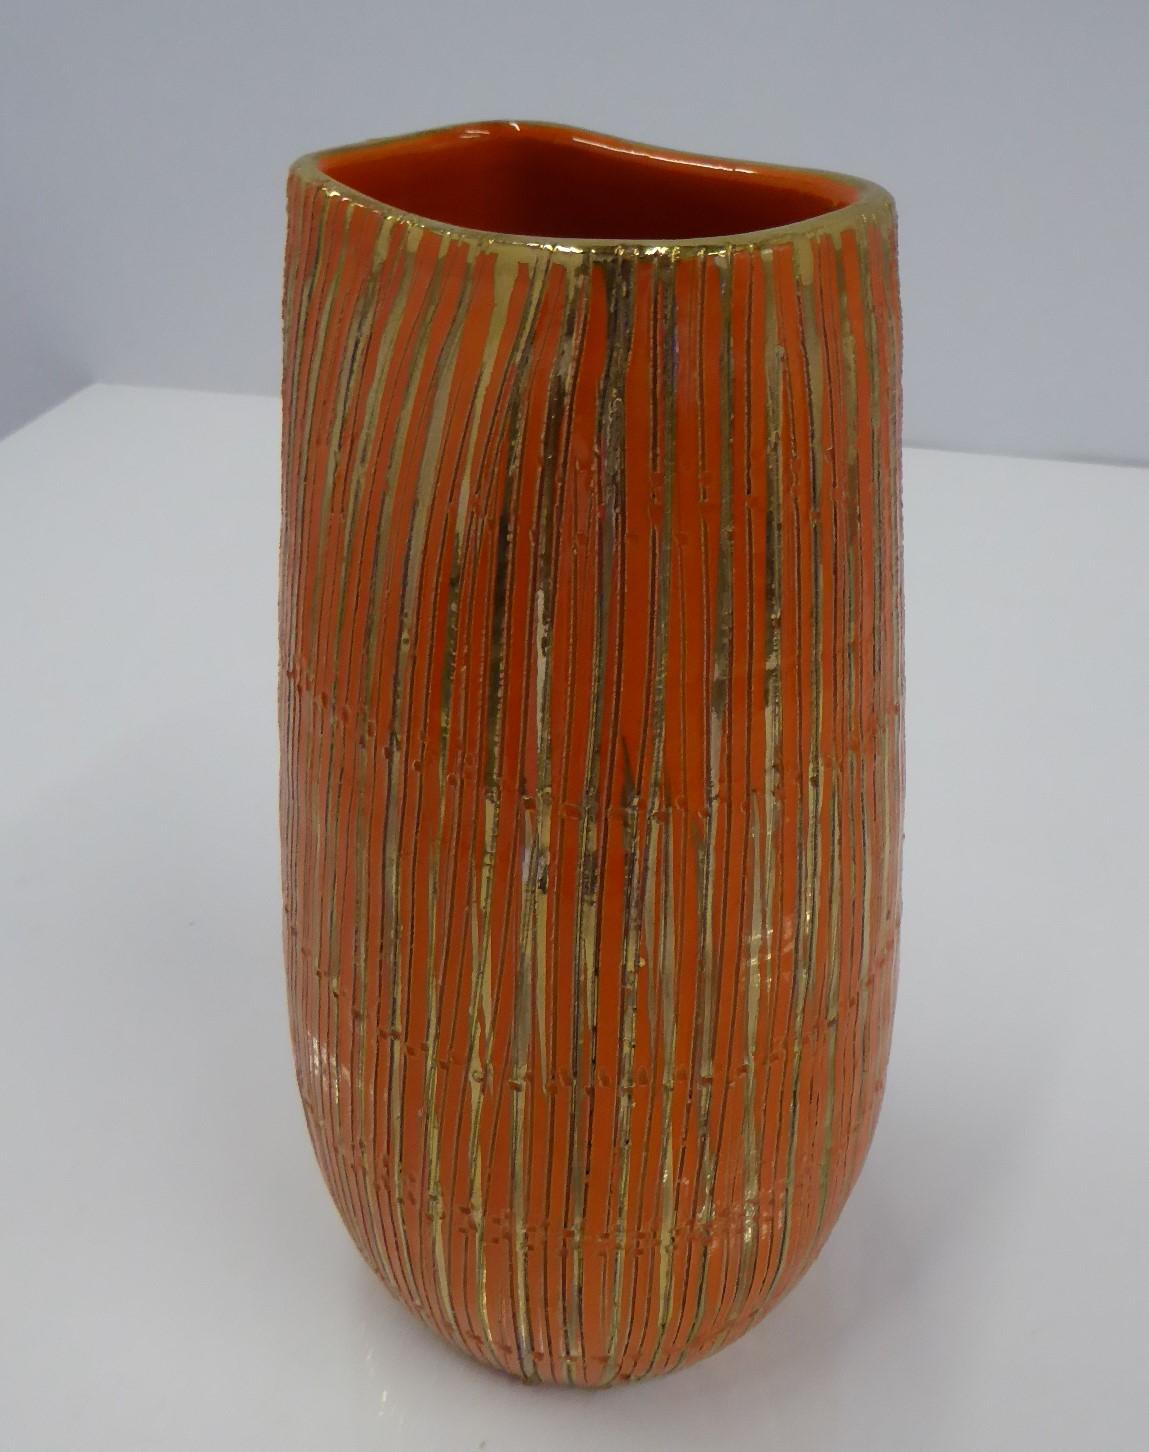 Aldo Londi Seta Series for Bitossi Modern Sgraffito Ceramic Vase, Italy, 1950s For Sale 1